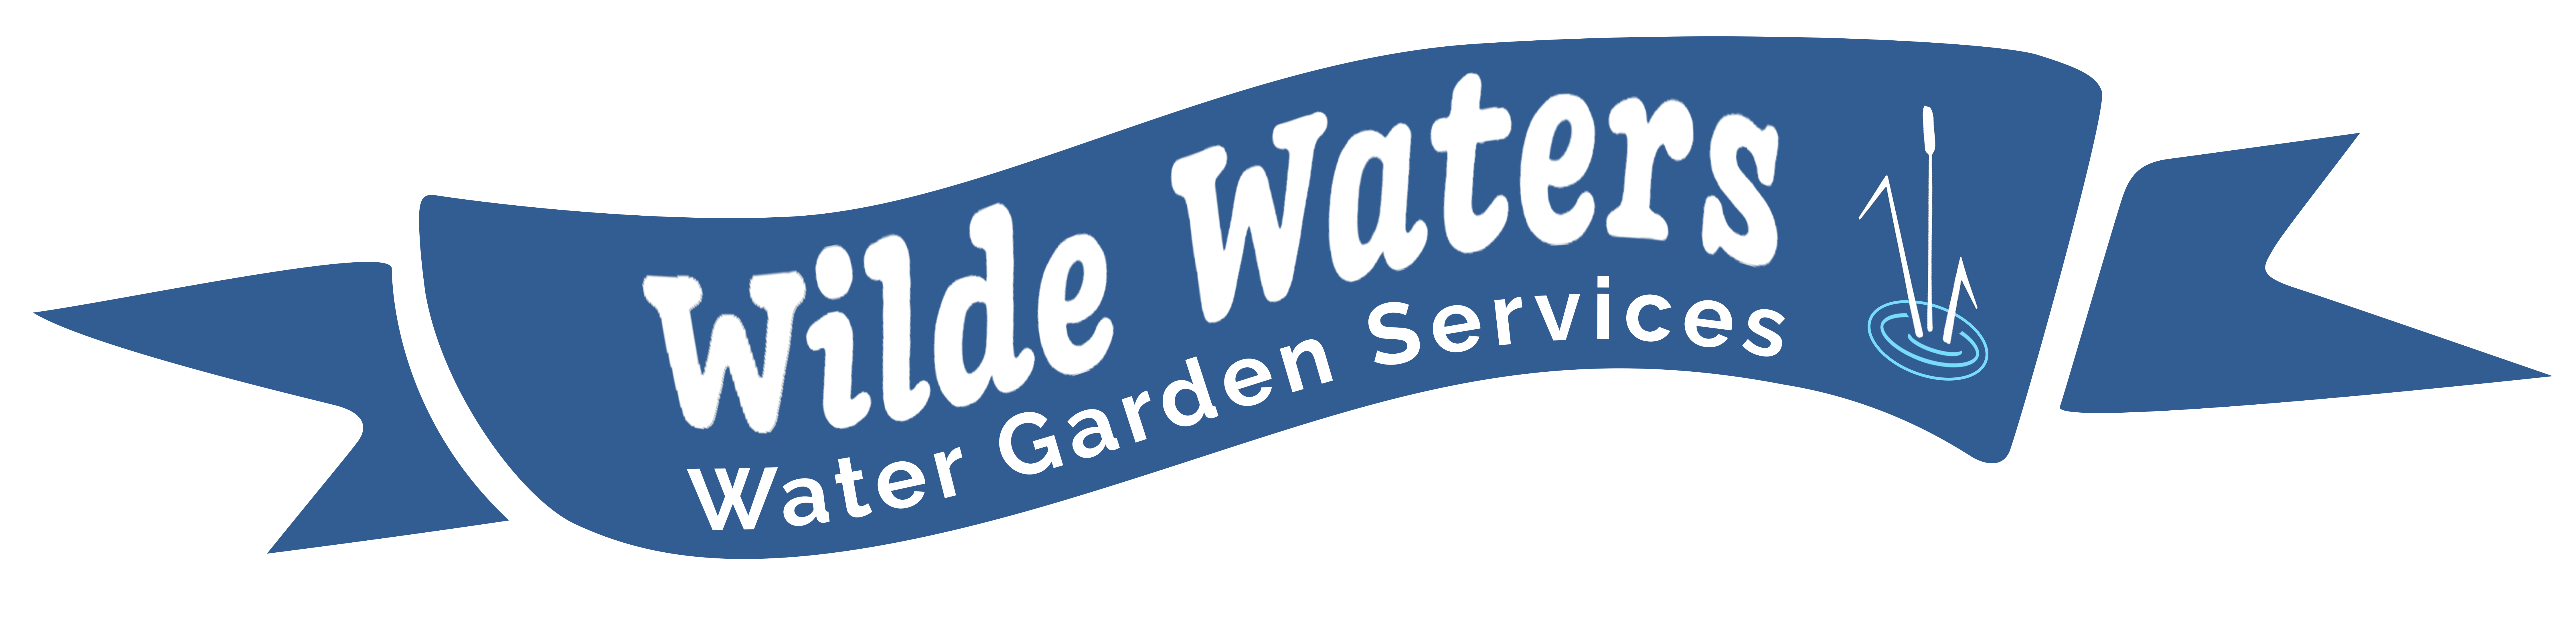 Wilde Waters Logo